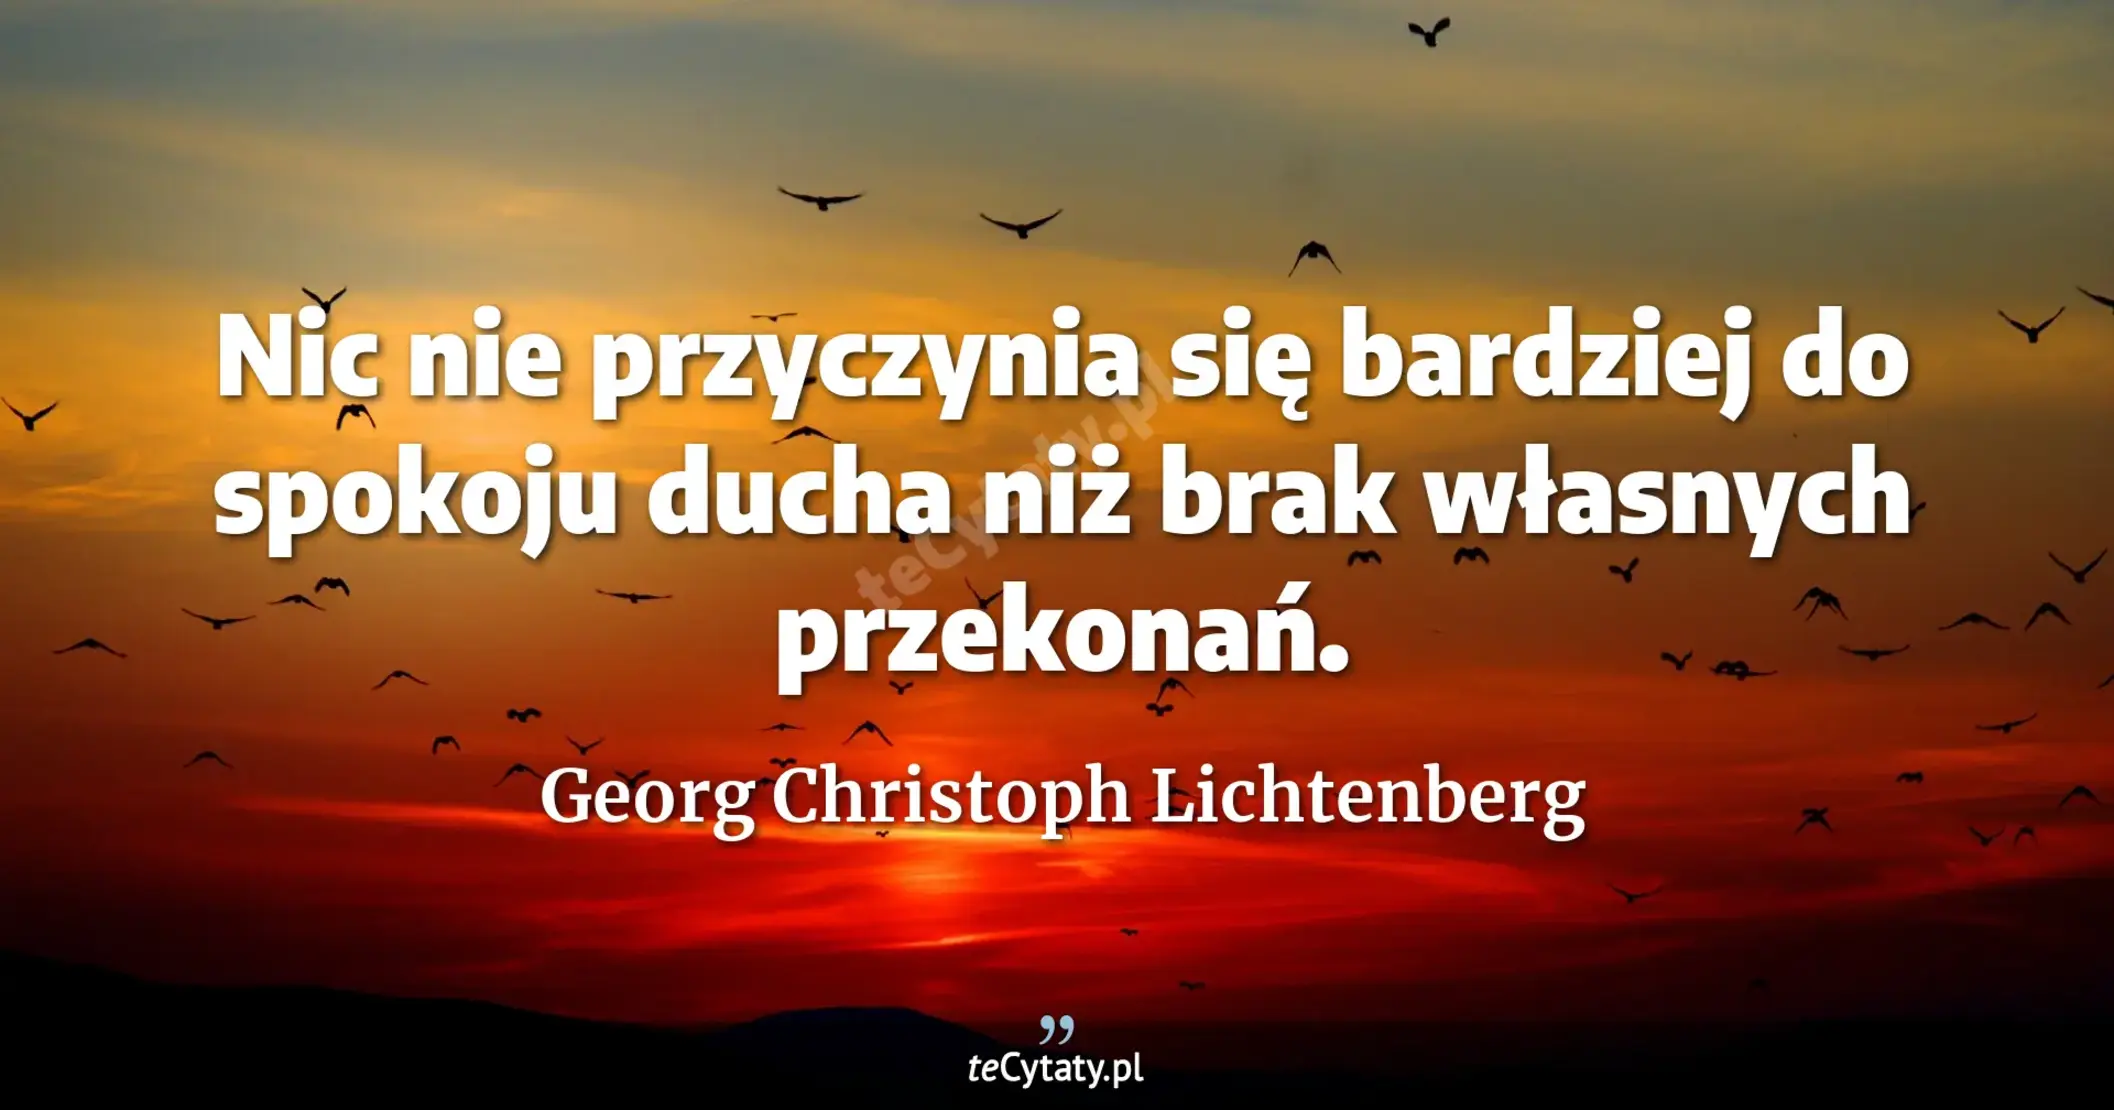 Nic nie przyczynia się bardziej do spokoju ducha niż brak własnych przekonań. - Georg Christoph Lichtenberg